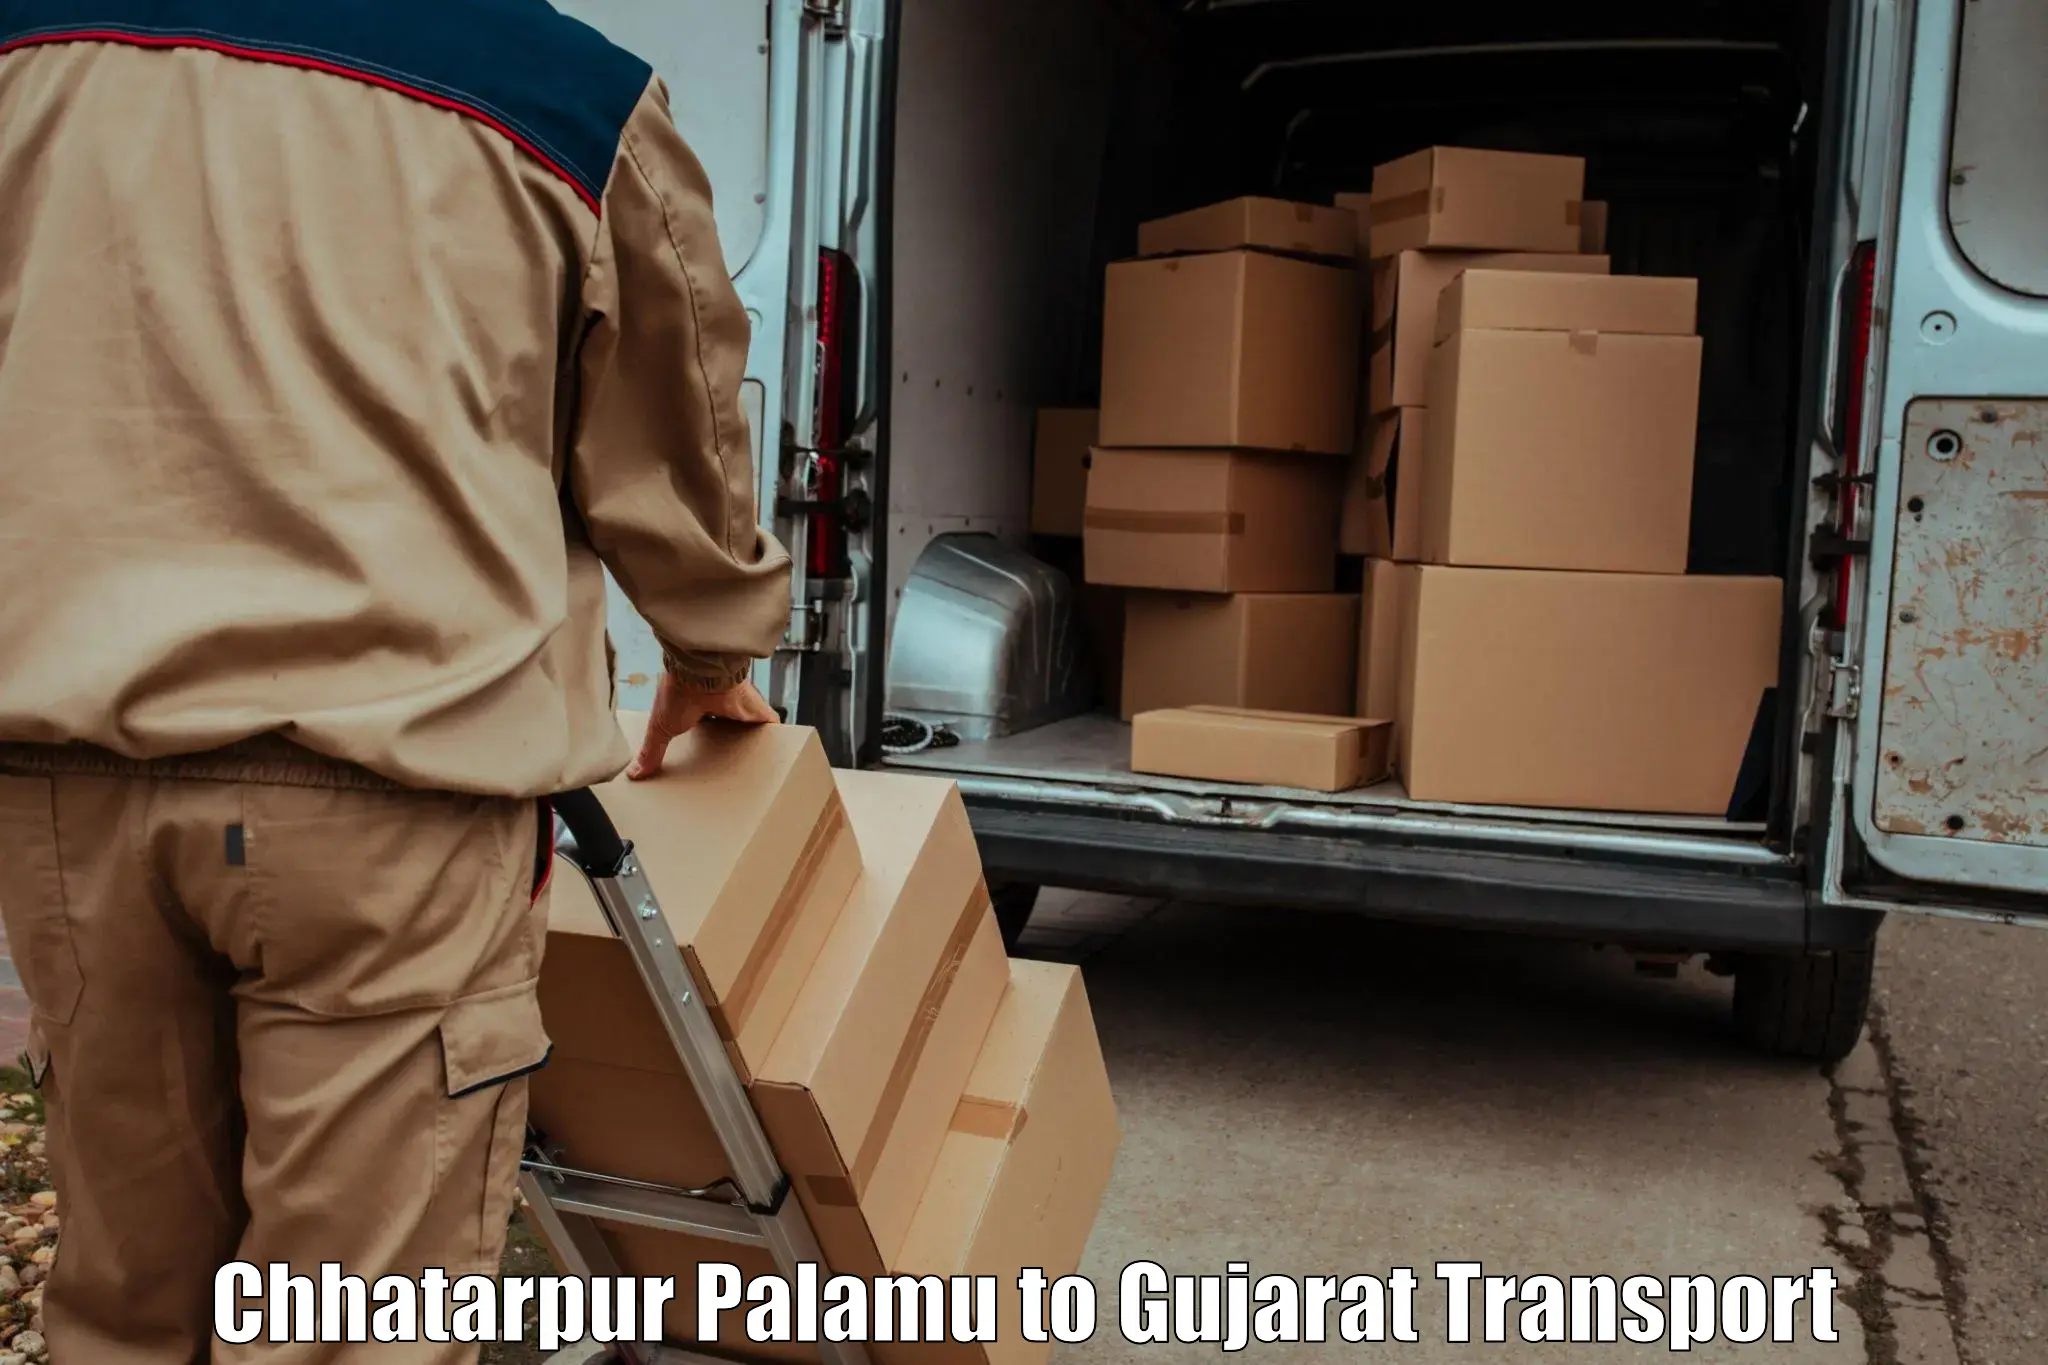 Nearest transport service in Chhatarpur Palamu to Vadnagar